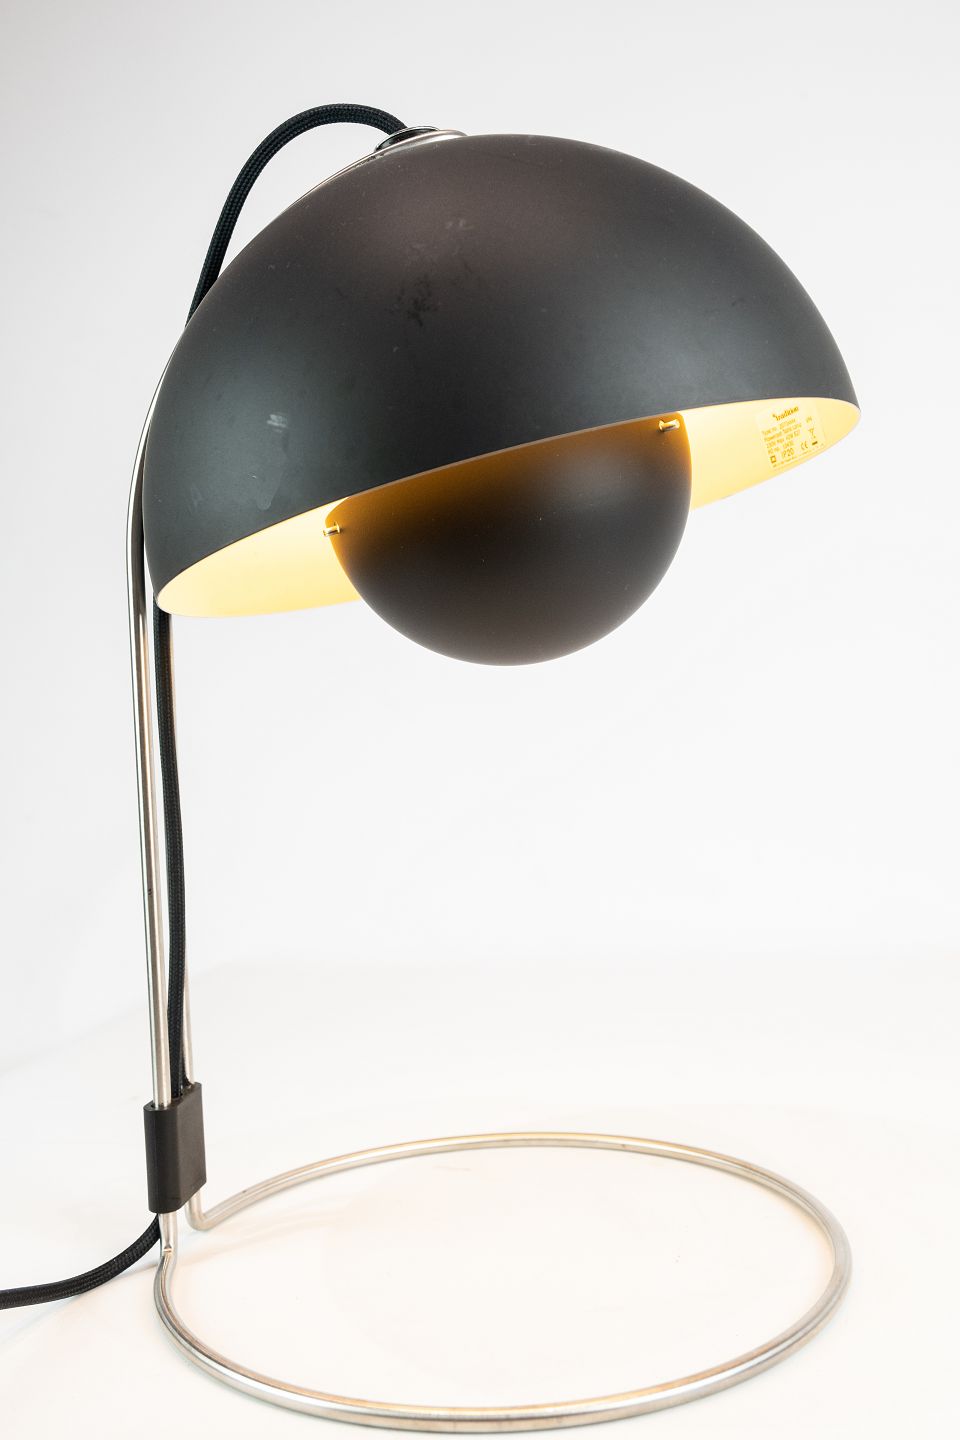 Partina City Absorbere Berygtet Sort Flowerpot bordlampe, model VP4, designet af Verner Panton i 1968. *  5000m2 - Osted Antik & Design